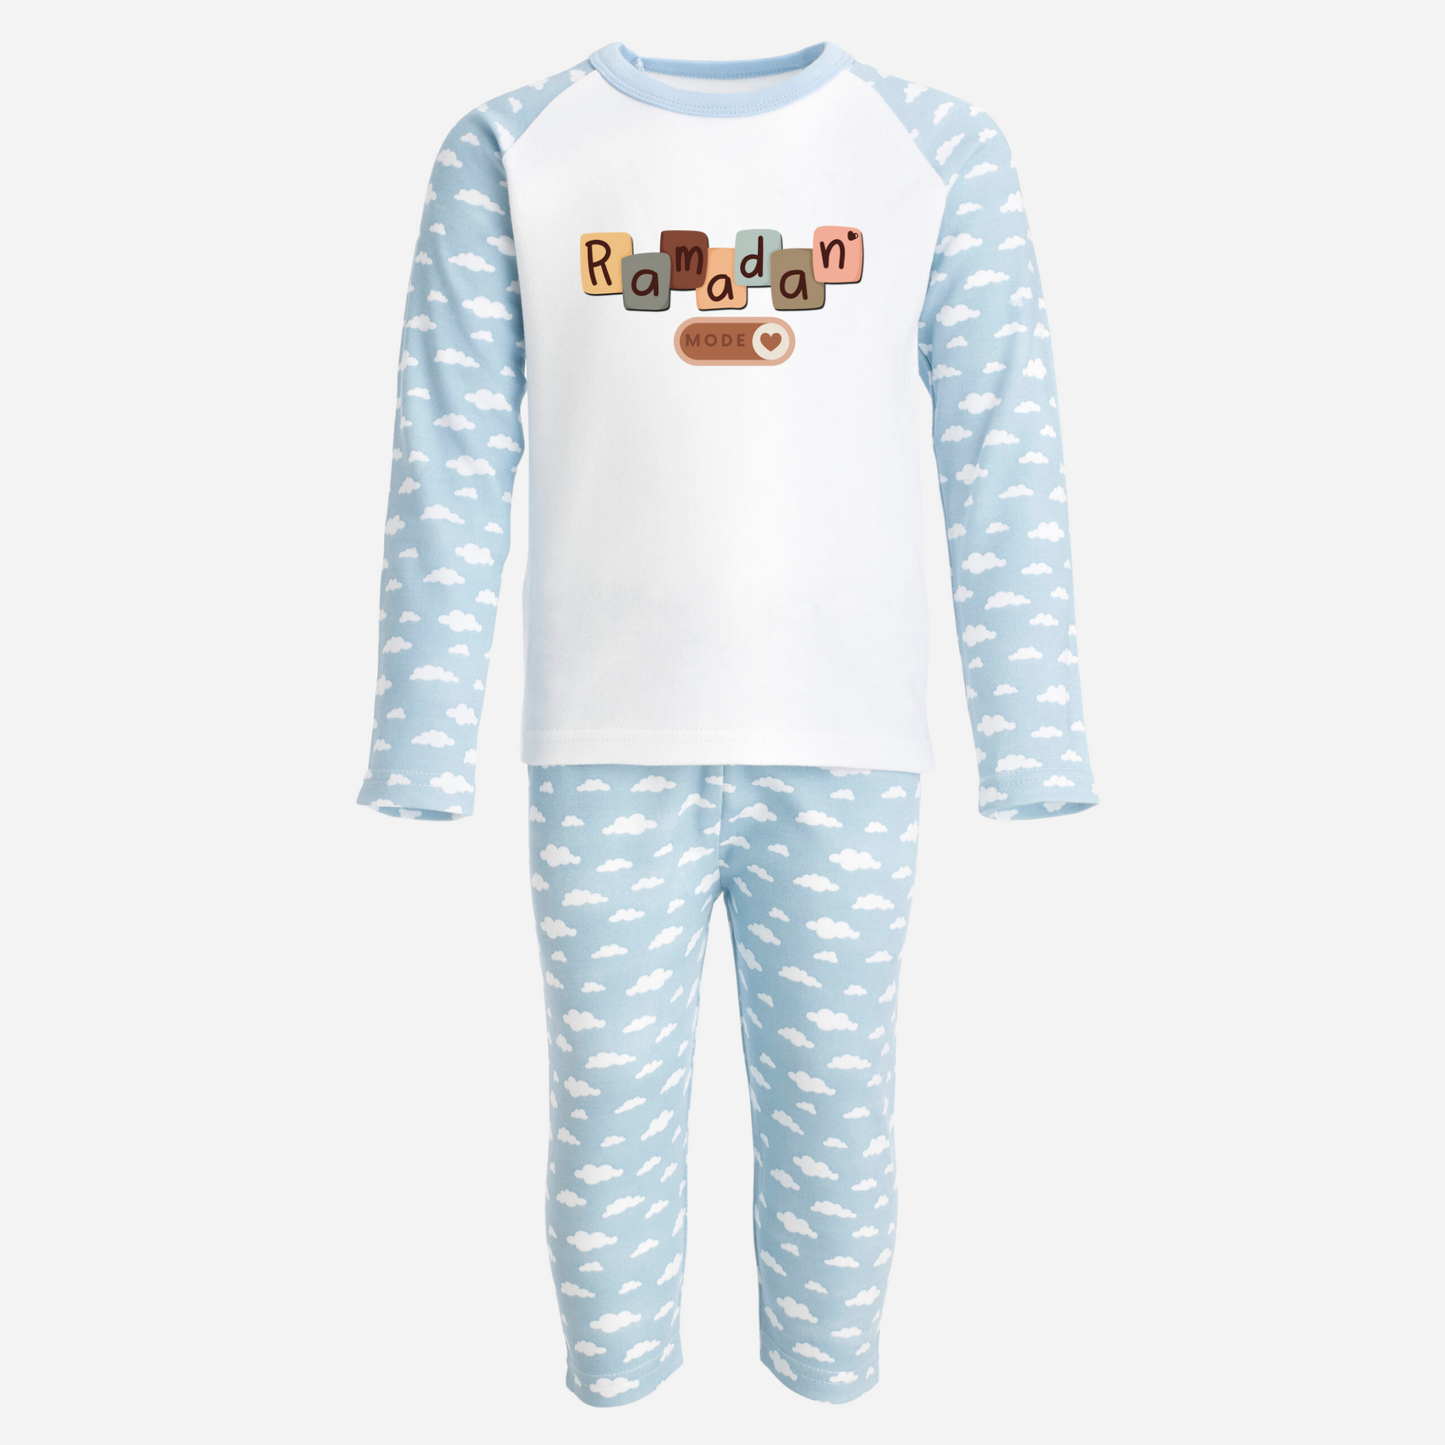 Baby & Kids Cloud Pyjamas Set - Ramadan Mode